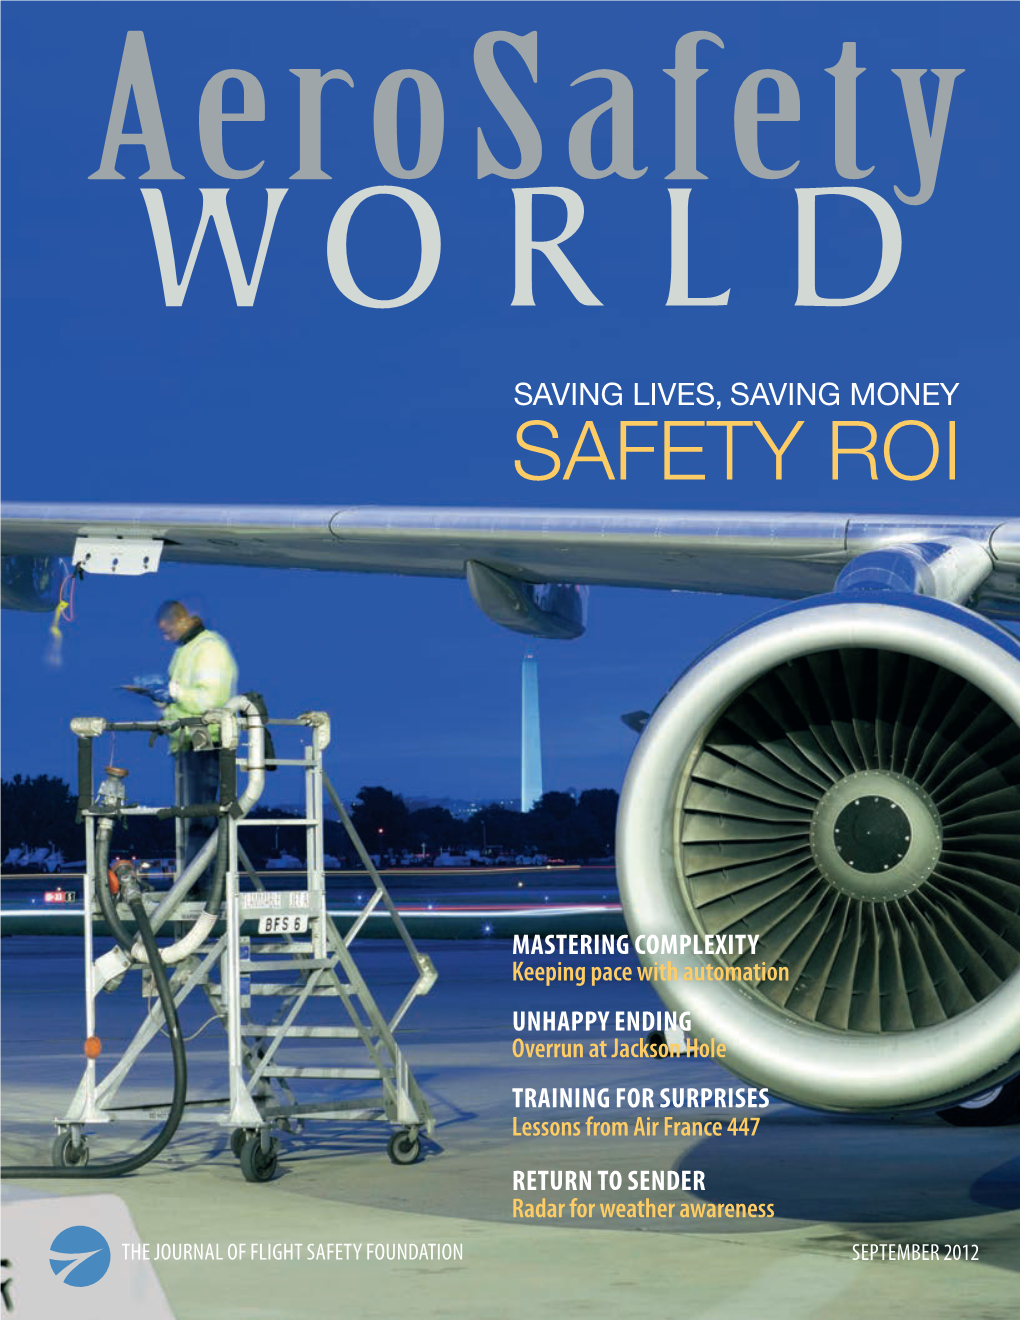 Safety WORLD SAVING LIVES, SAVING MONEY SAFETY ROI